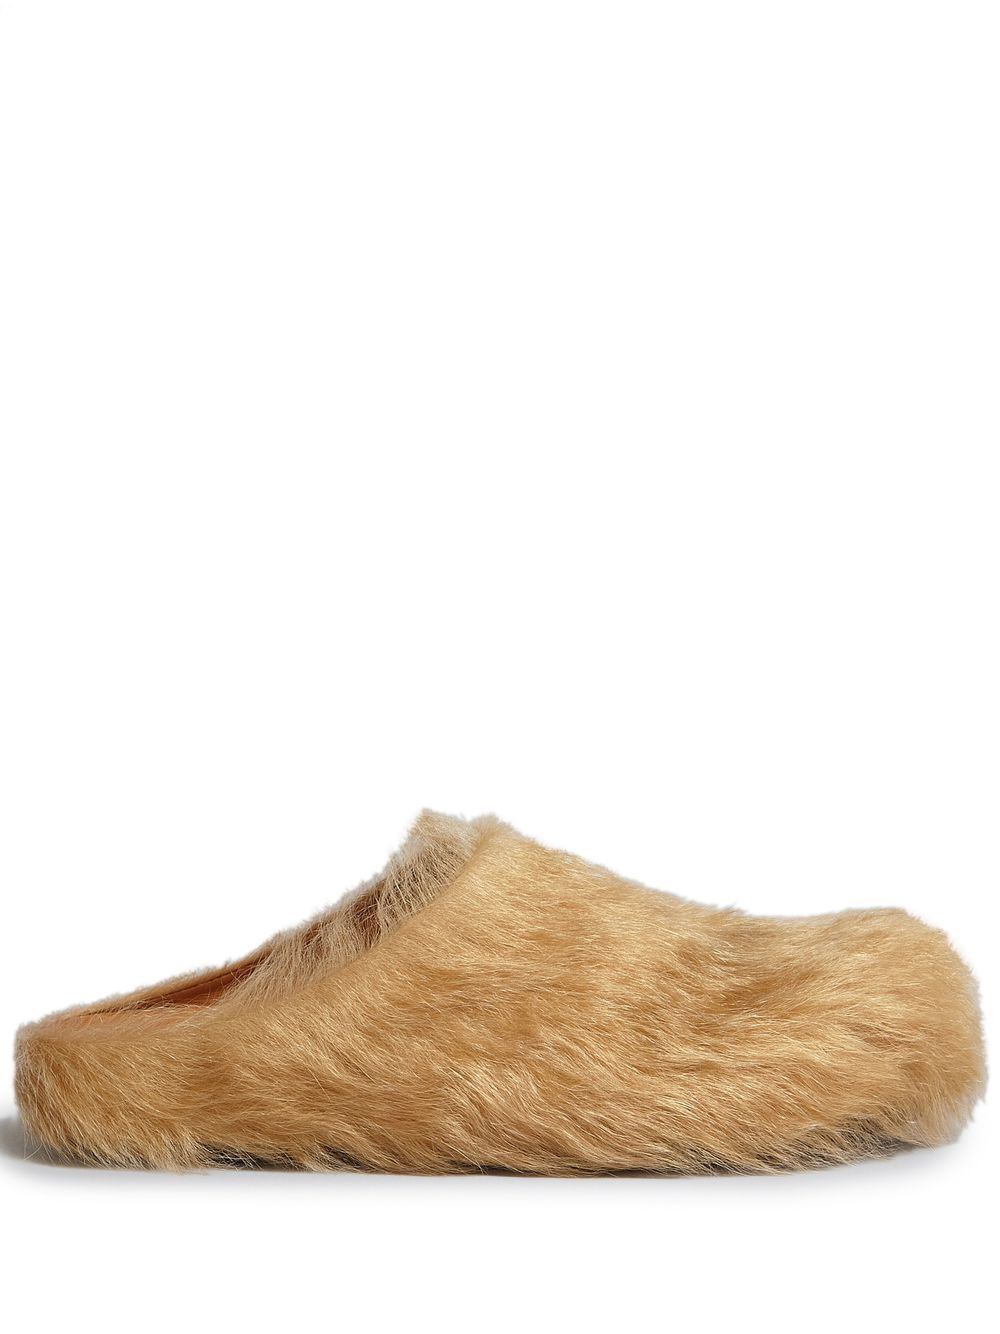 Fussbet Sabot calf-hair slippers